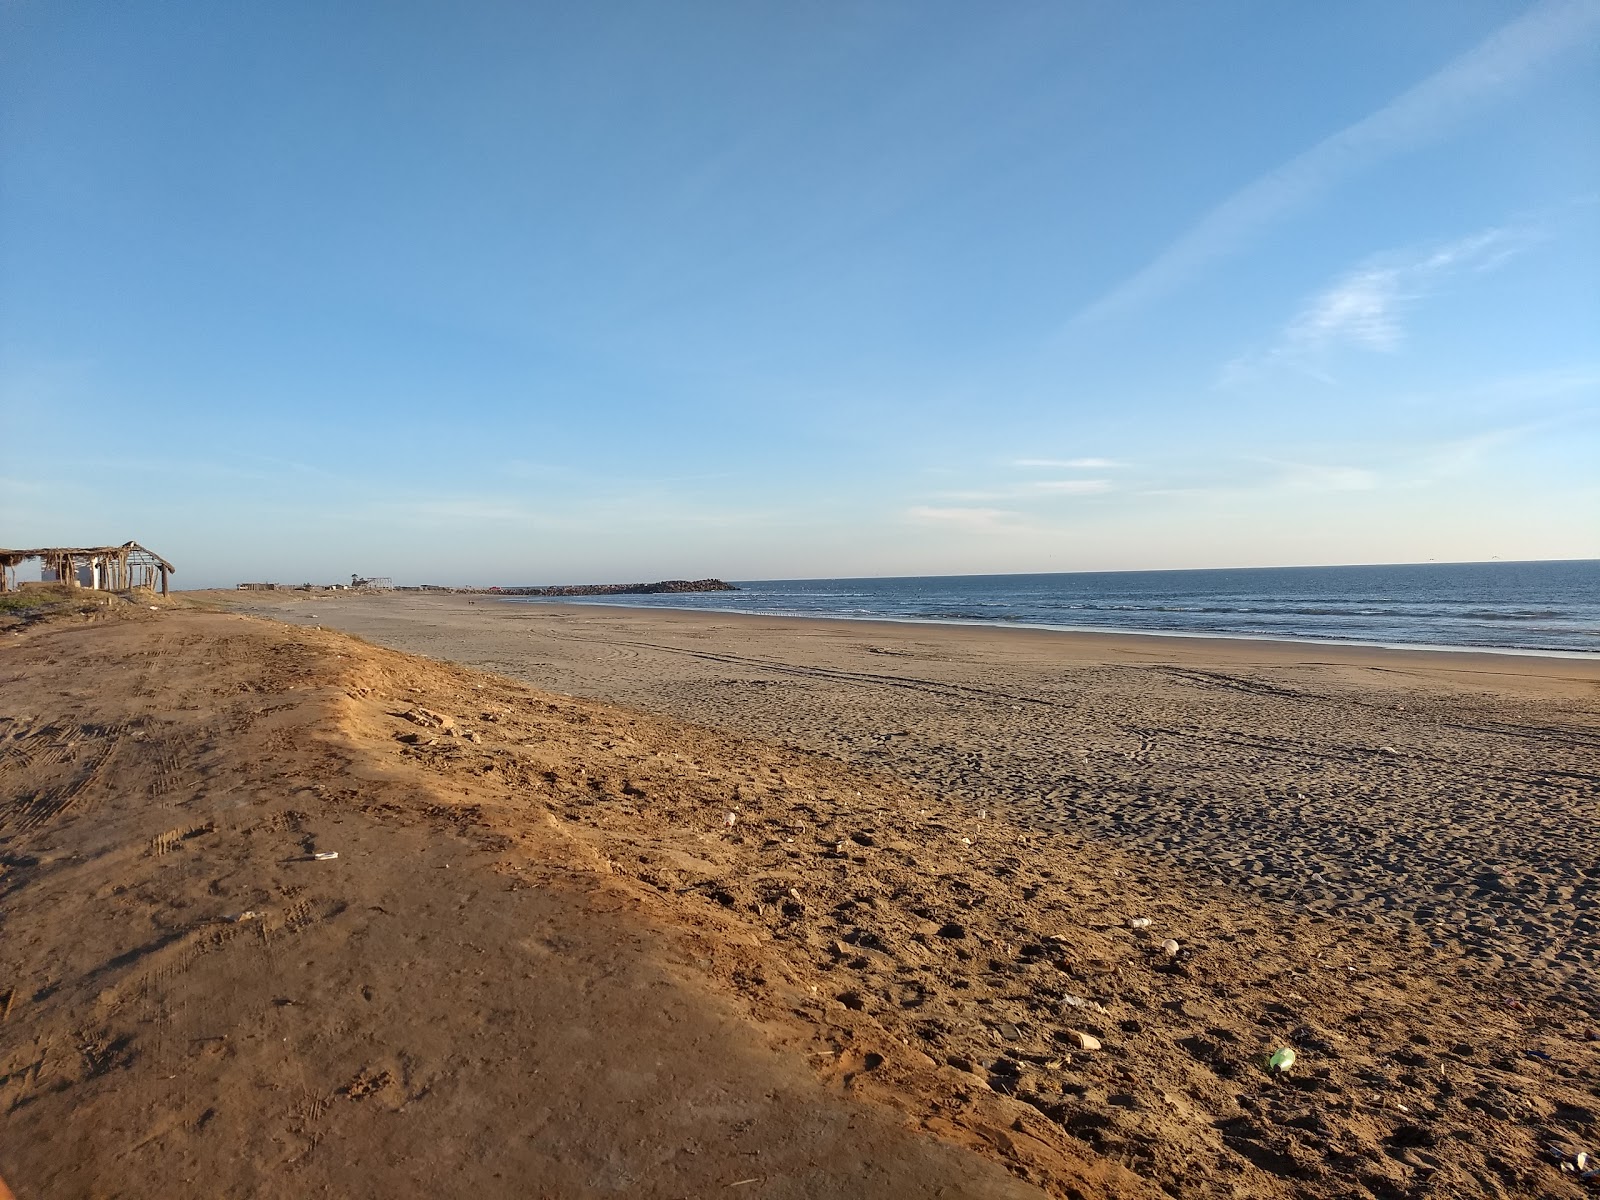 Zdjęcie Ponce beach z powierzchnią jasny piasek